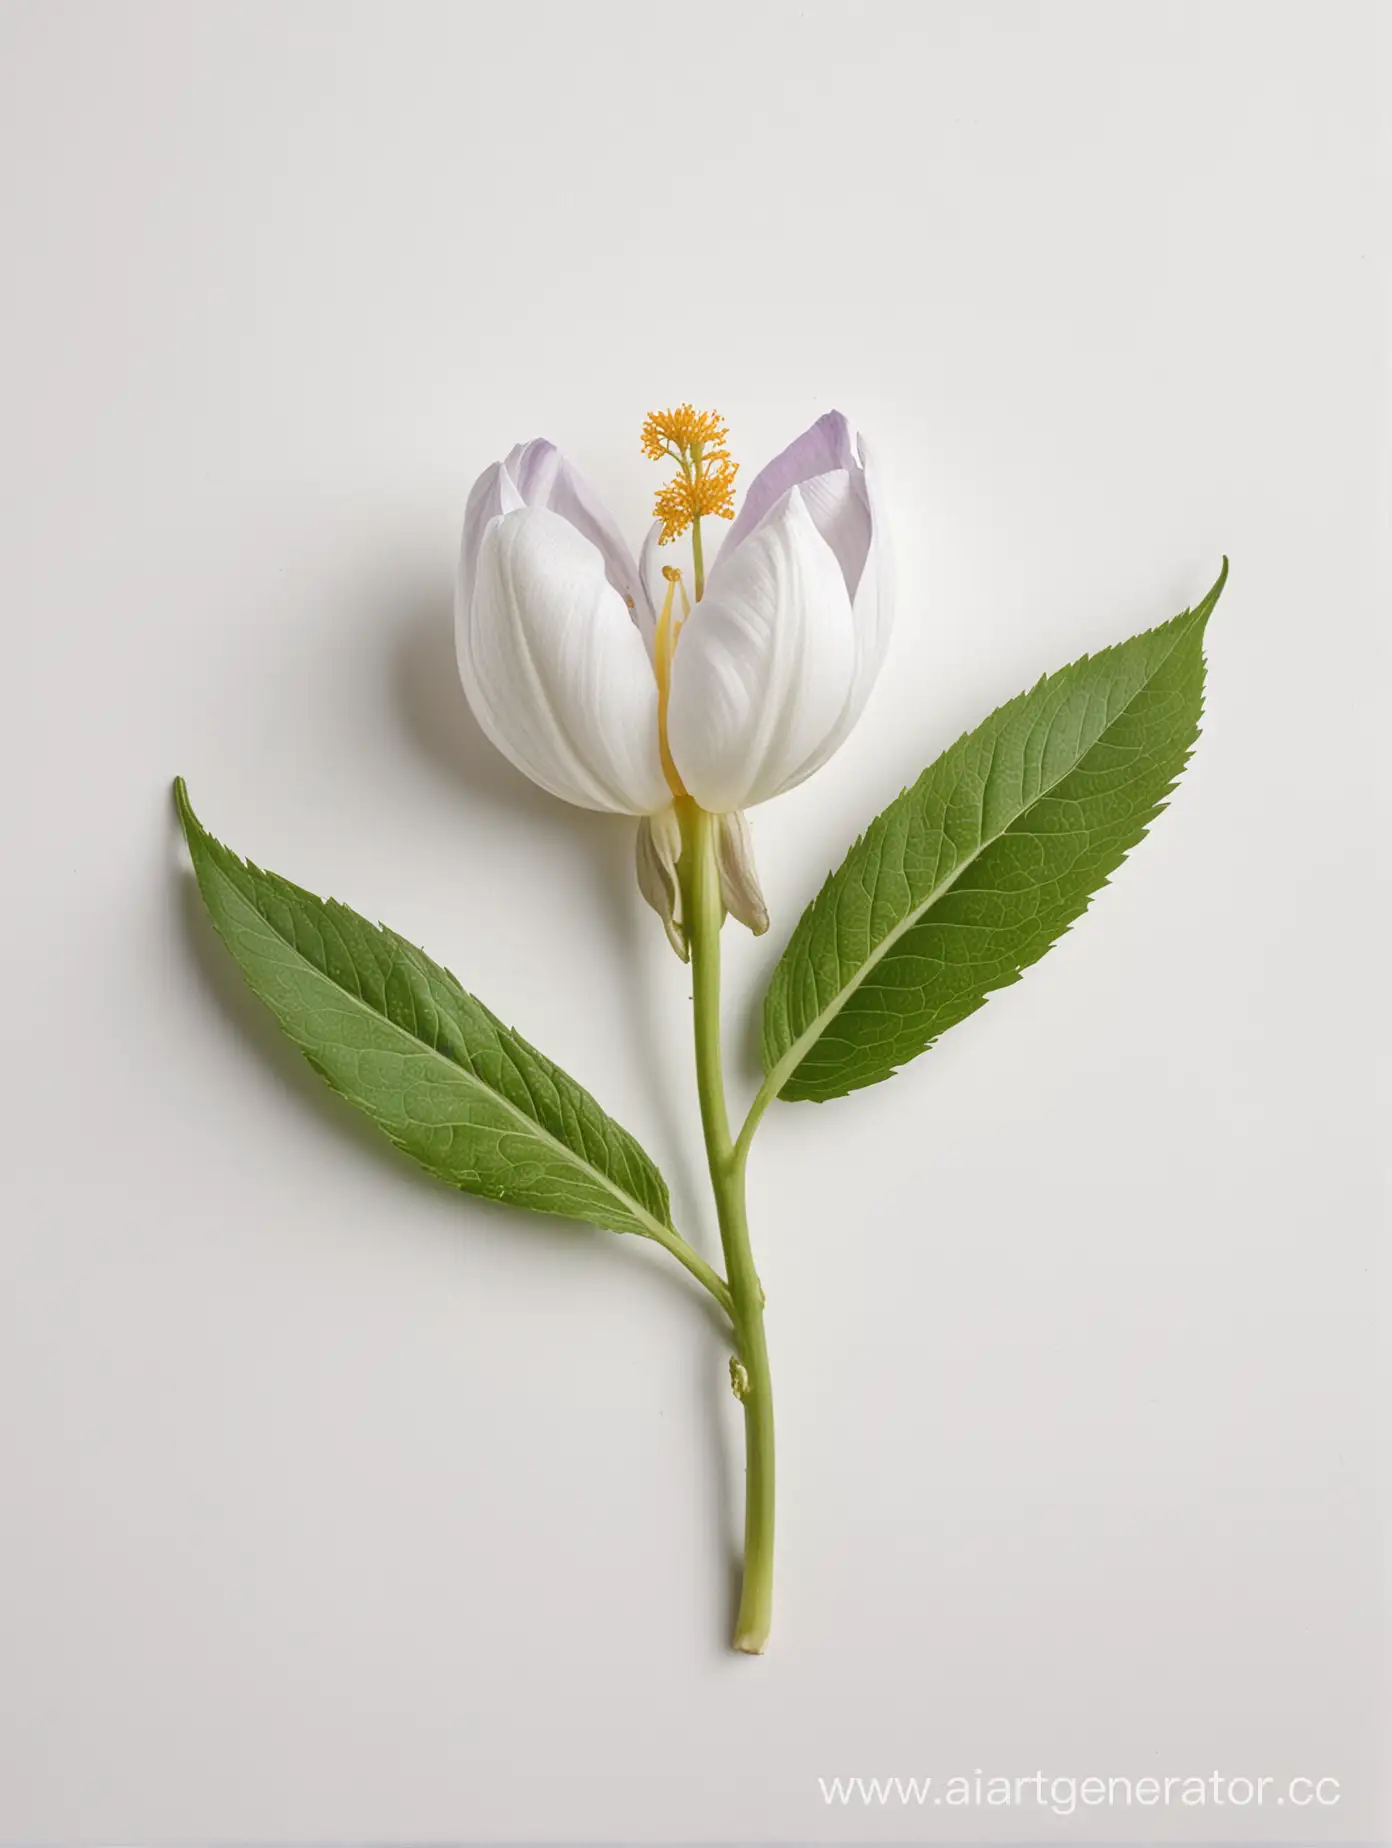 Vibrant-Amarnath-Flower-Isolated-on-White-Background